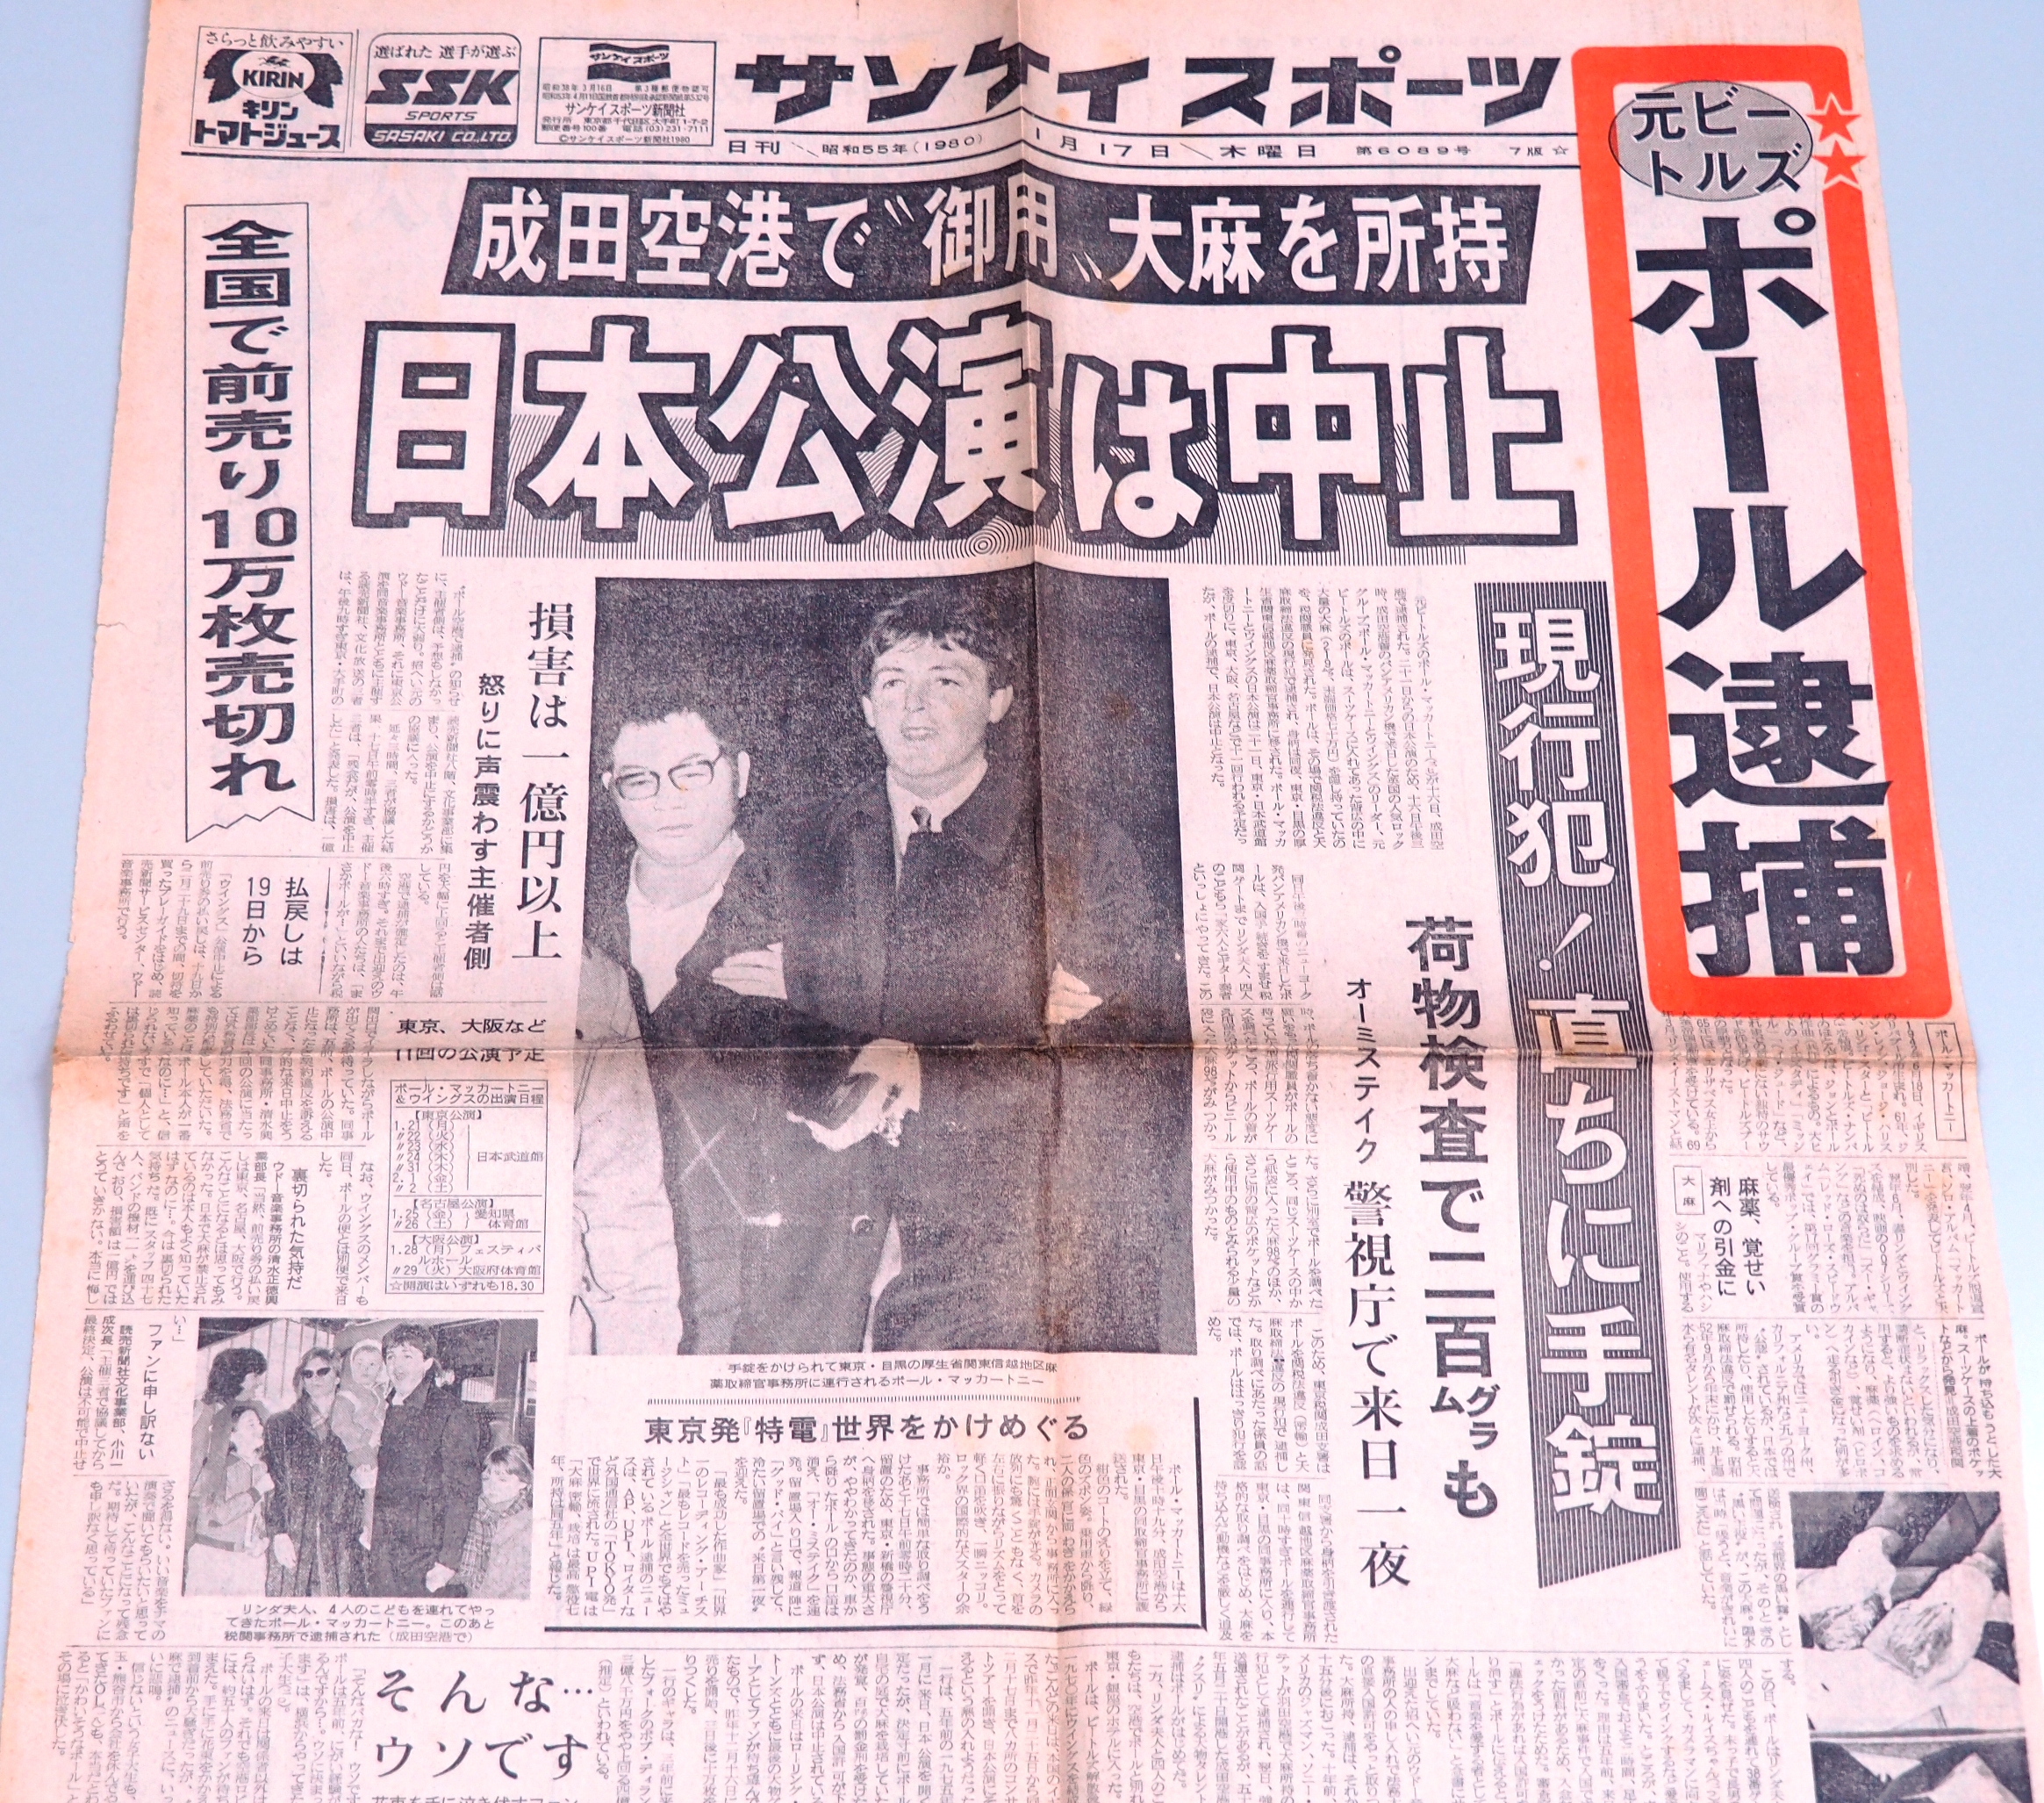 「ポール逮捕」を報じる、1980年1月17日付のサンケイスポーツ。